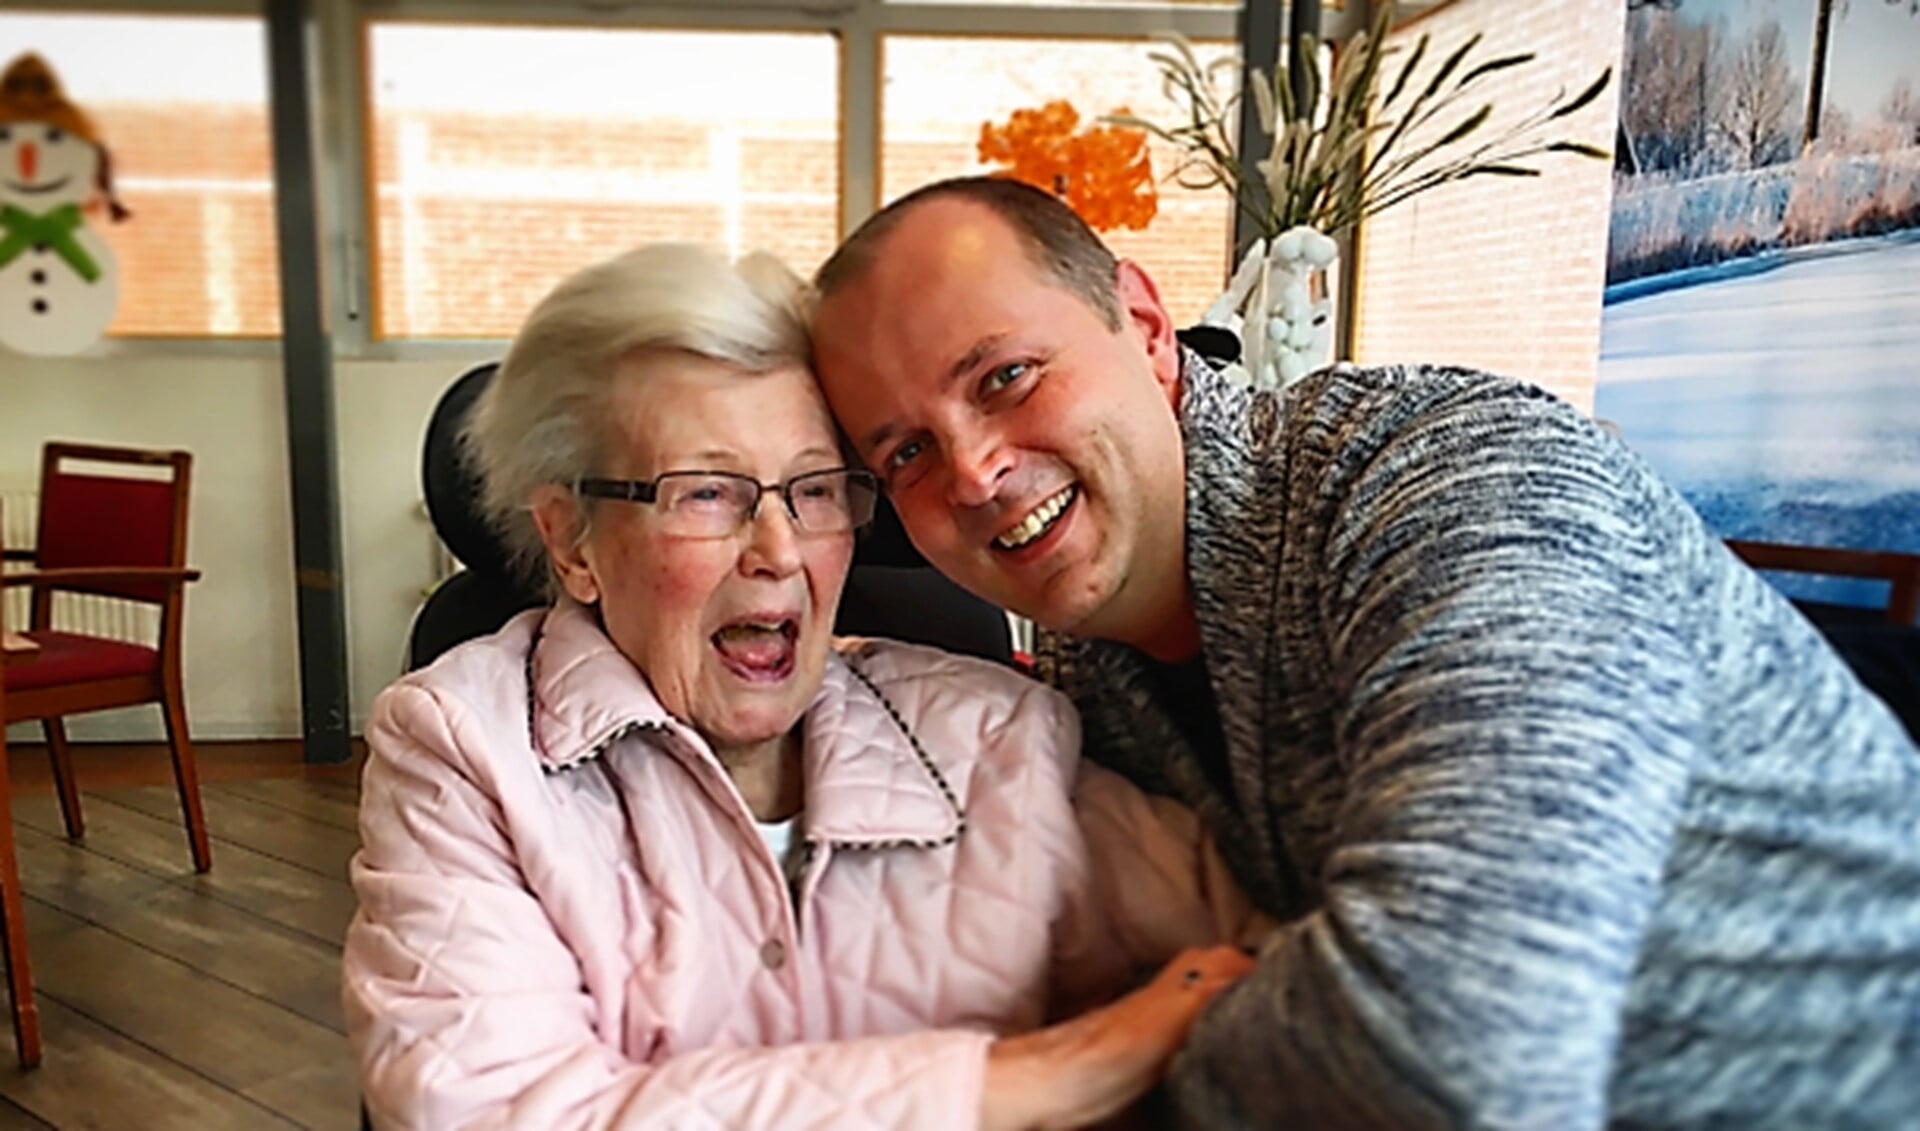 Jurrien kietelt zijn tante met alzheimer, waar hij met liefde voor zorgt (tekst/foto: Naomi Defoer).